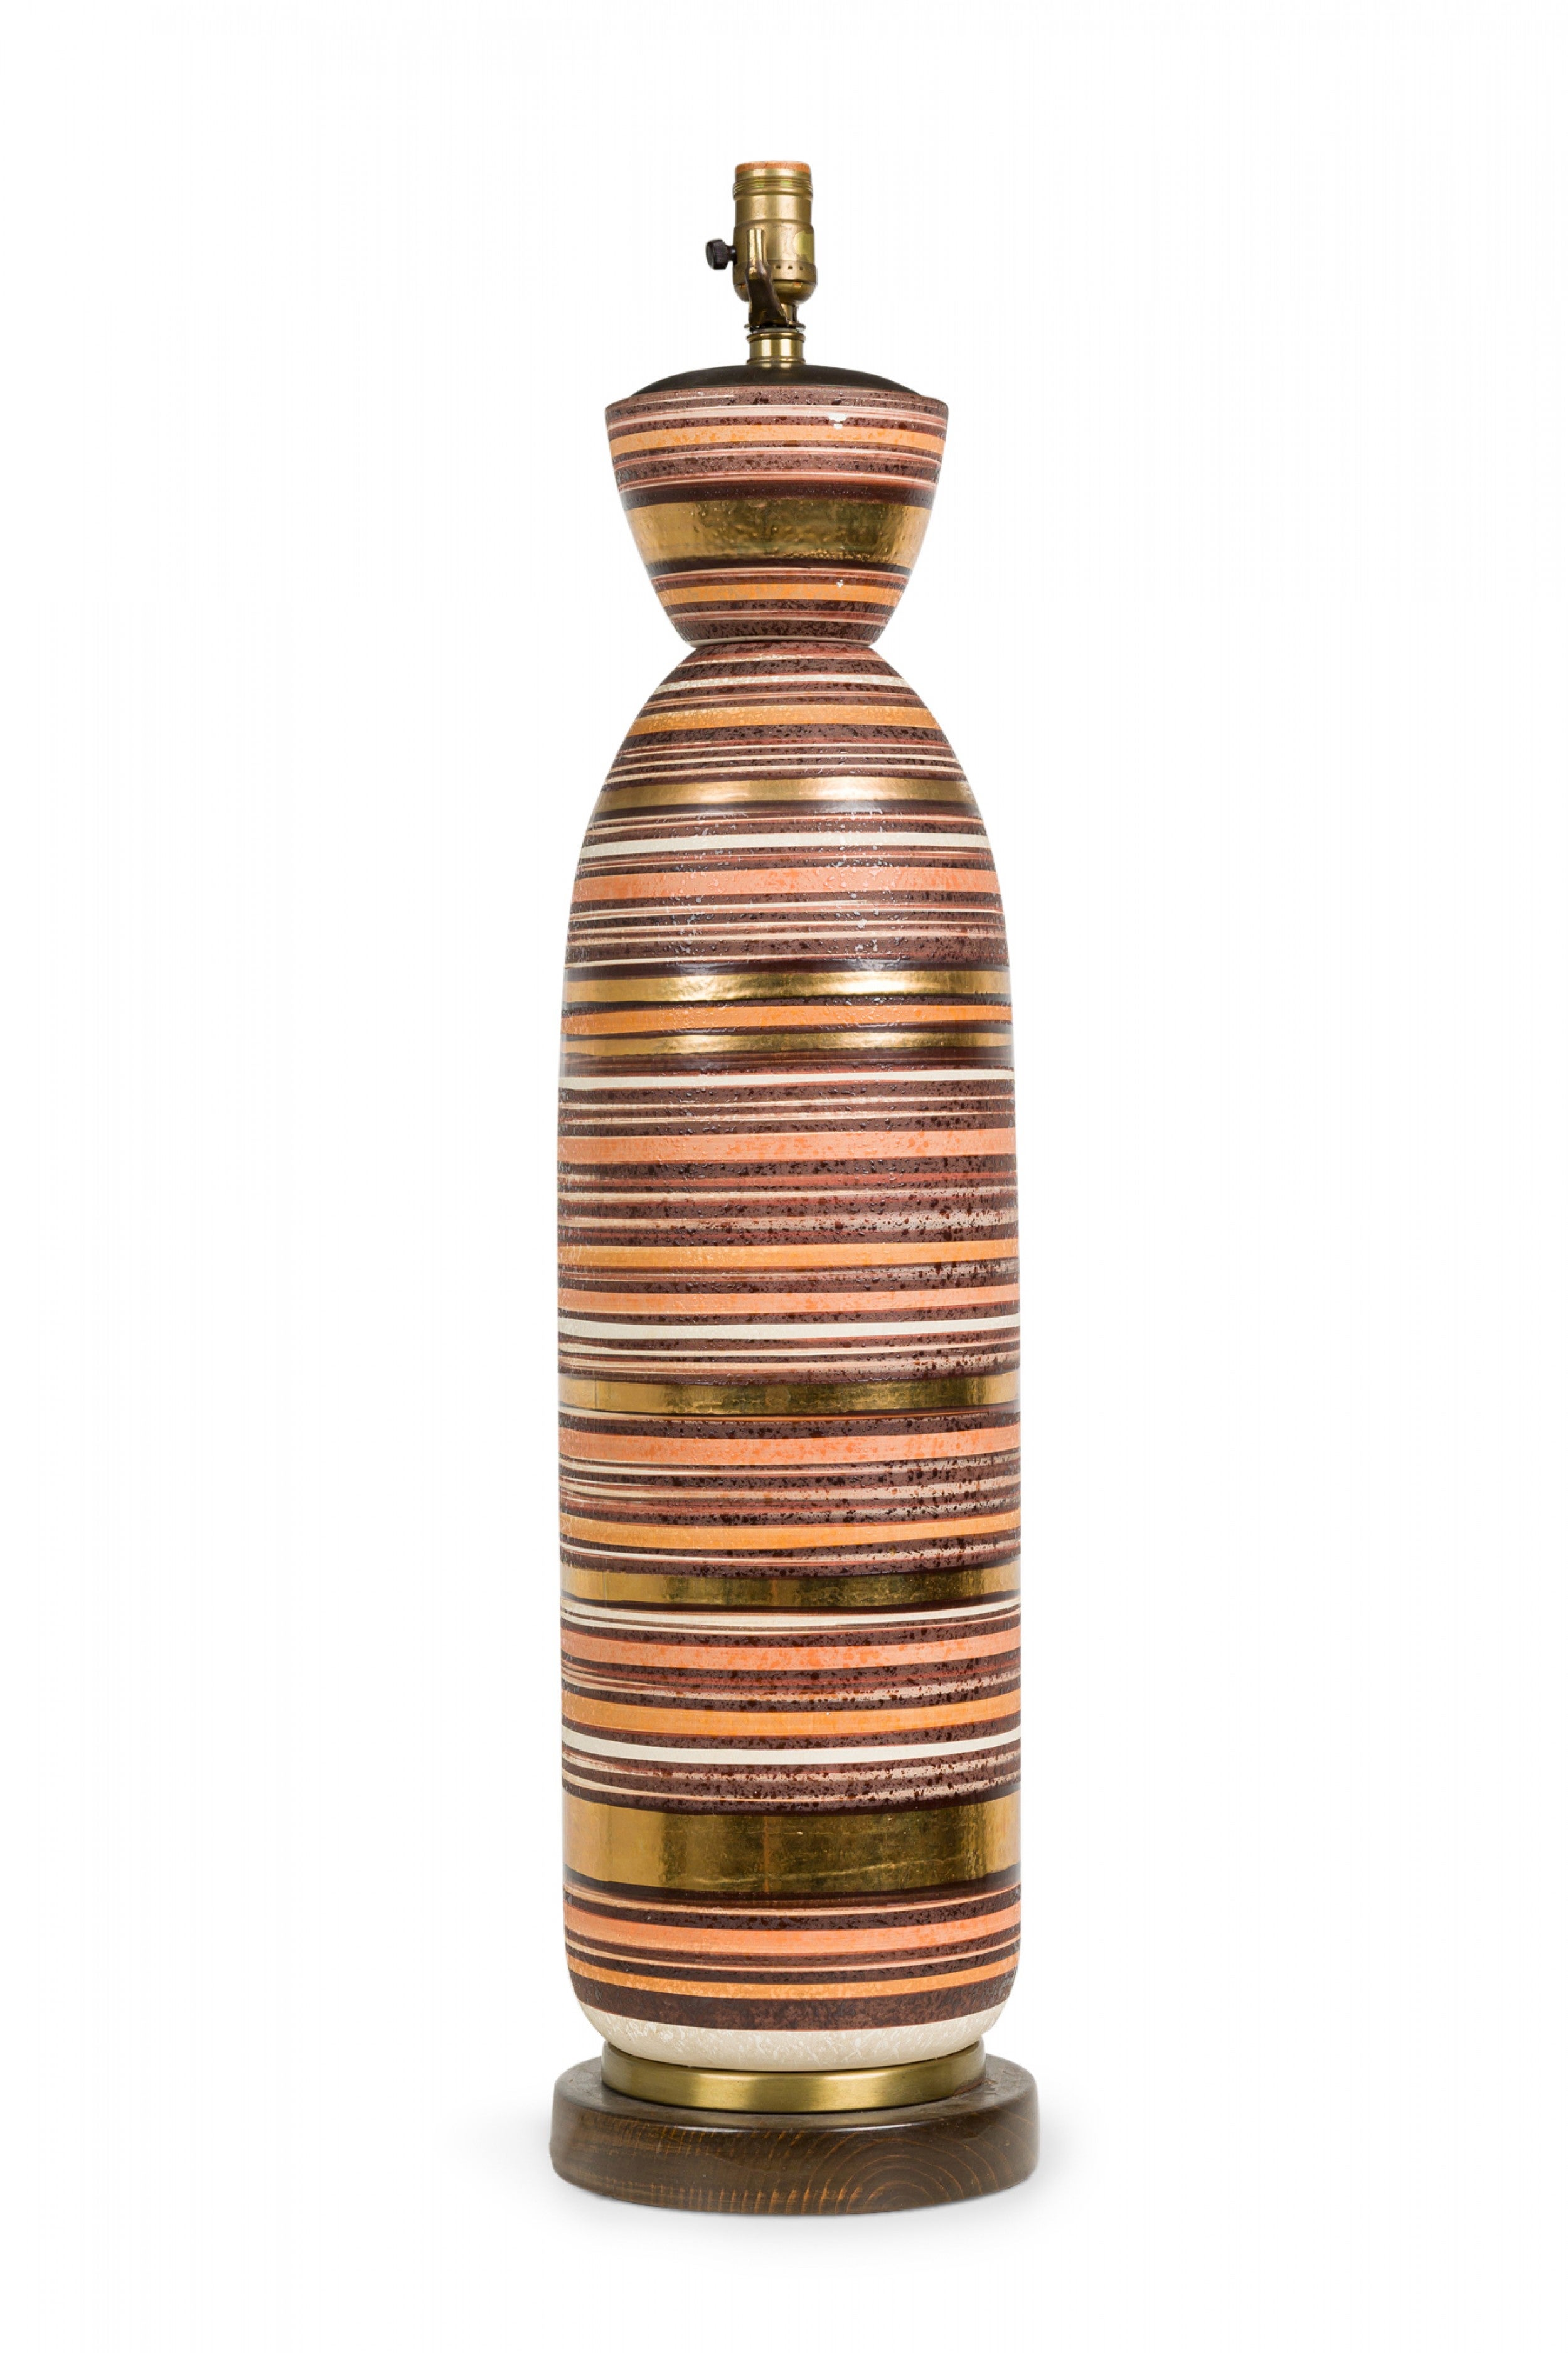 Lampe de table en céramique américaine Tall Bullet Striped Lustre Glazed Brown Toned